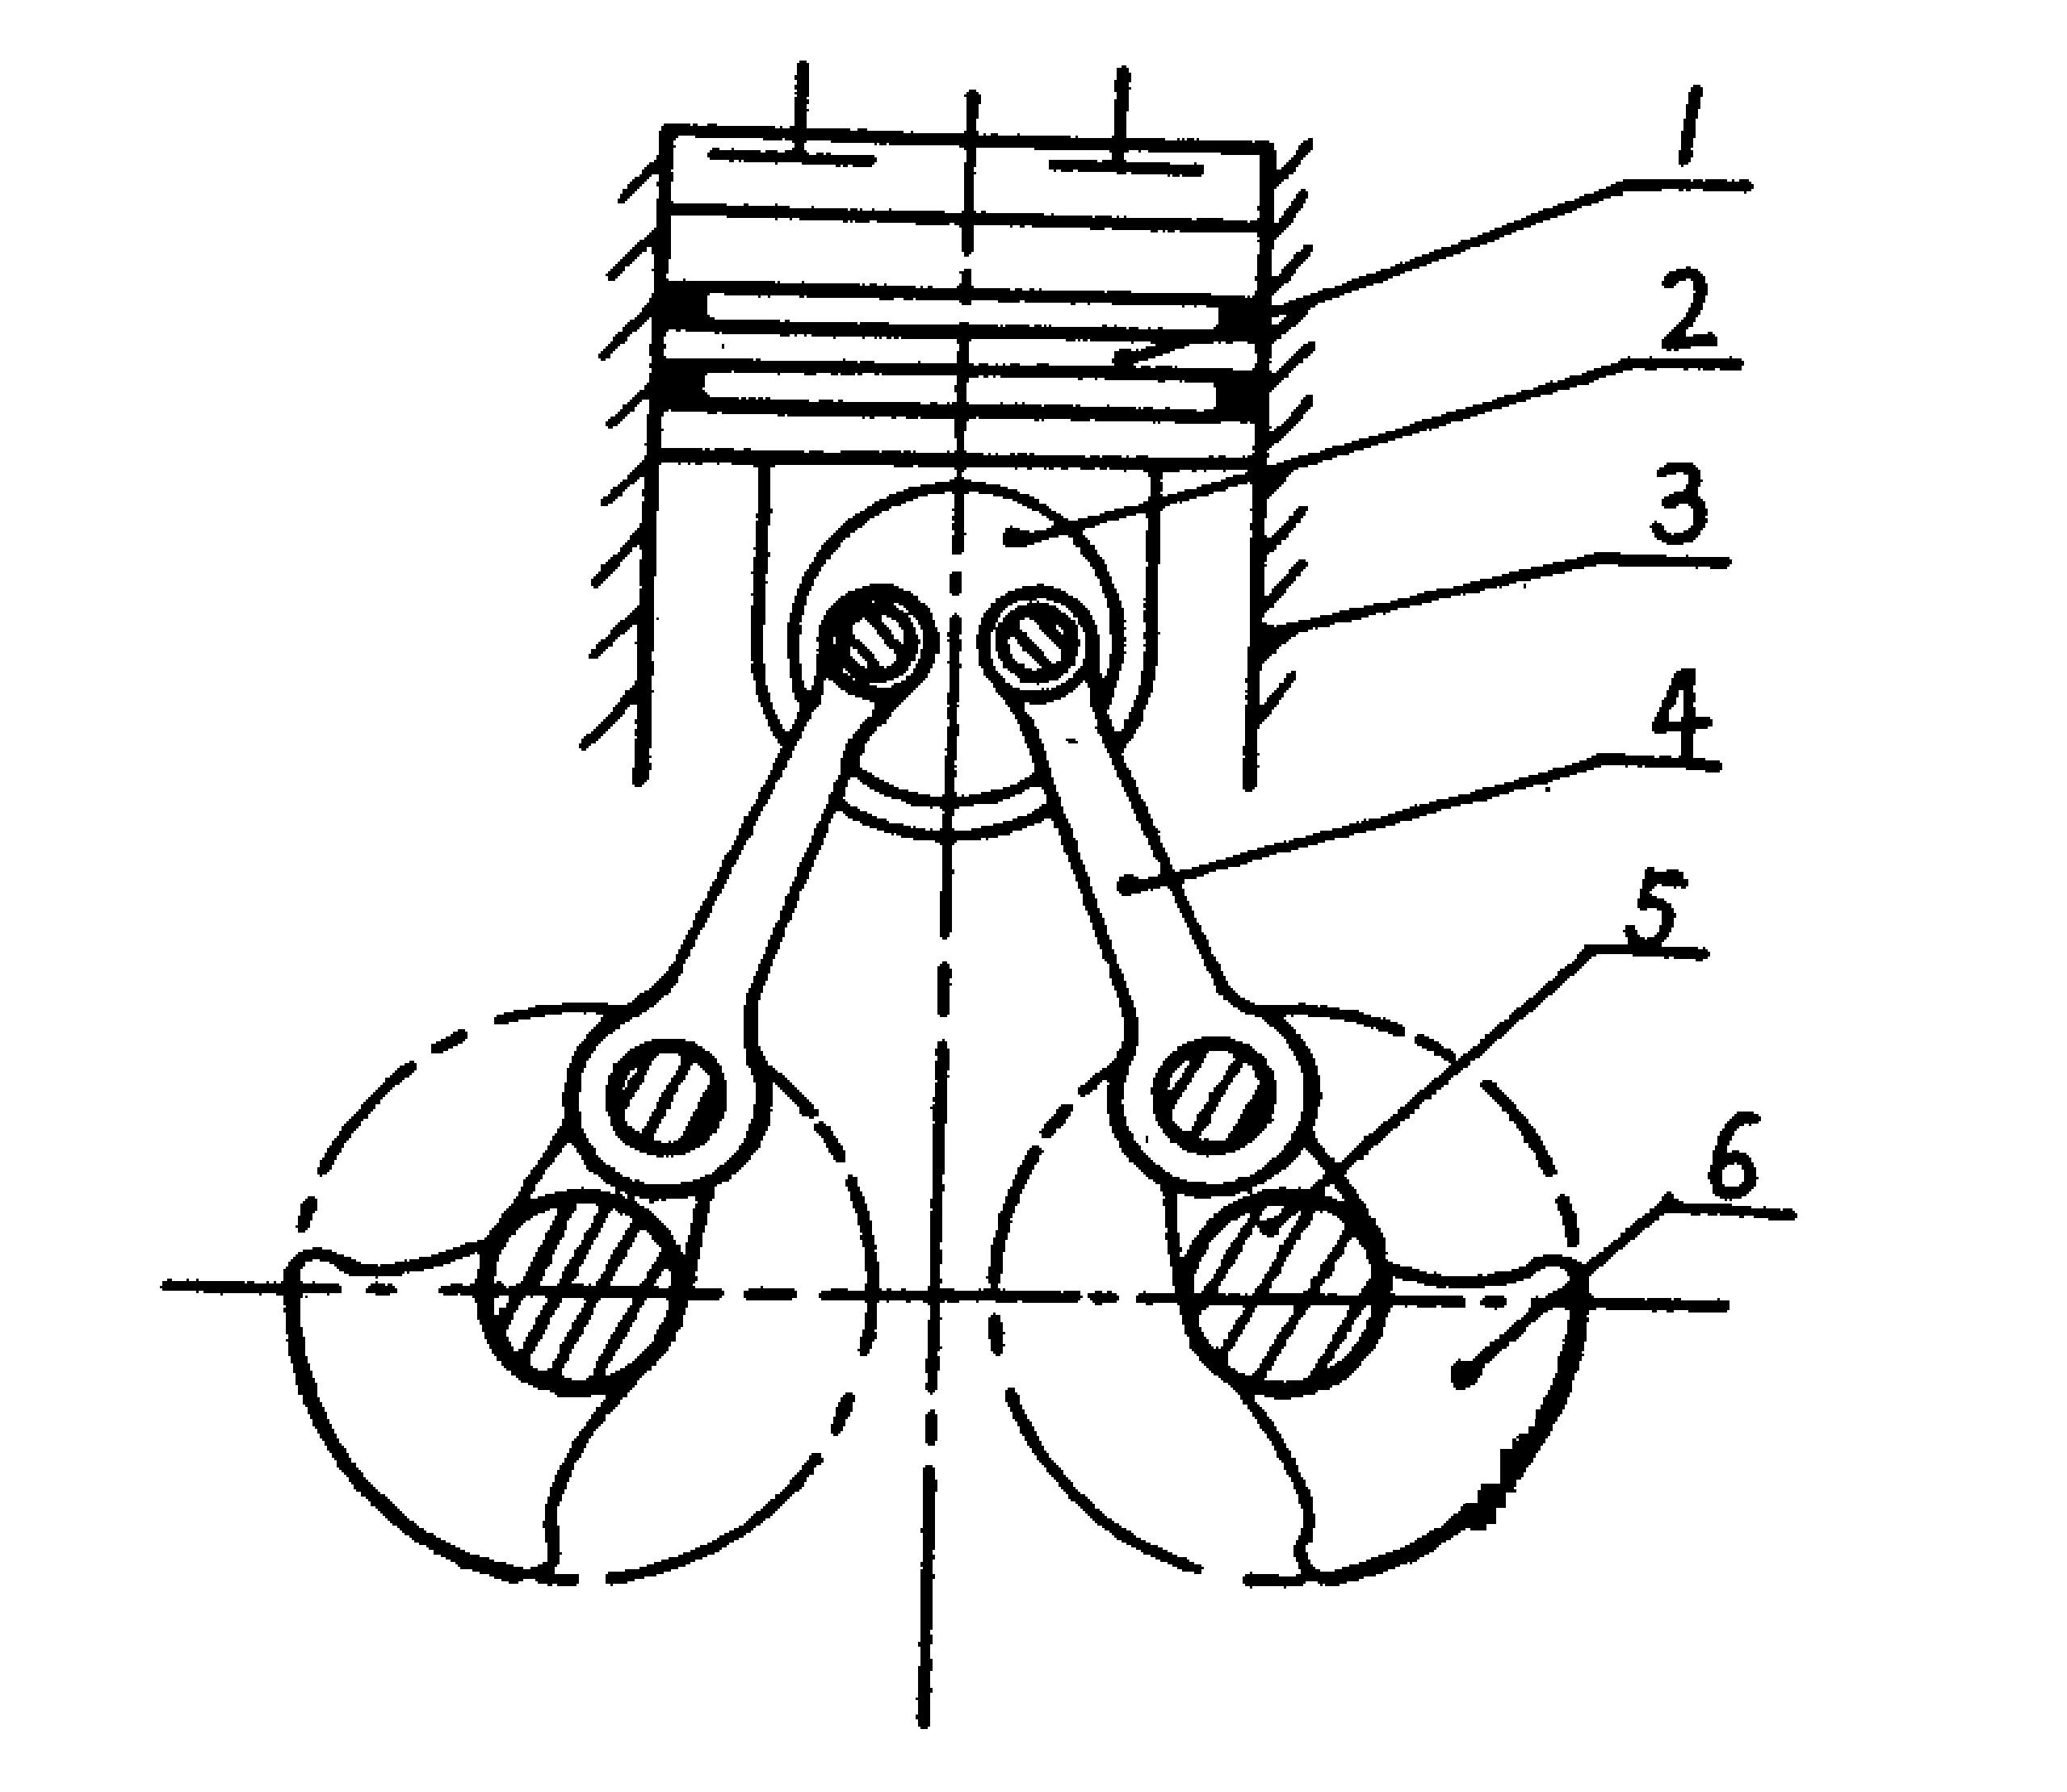 摘要附图摘要一种内燃机曲柄连杆机构,包括活塞1,气缸3,连杆4,曲轴5